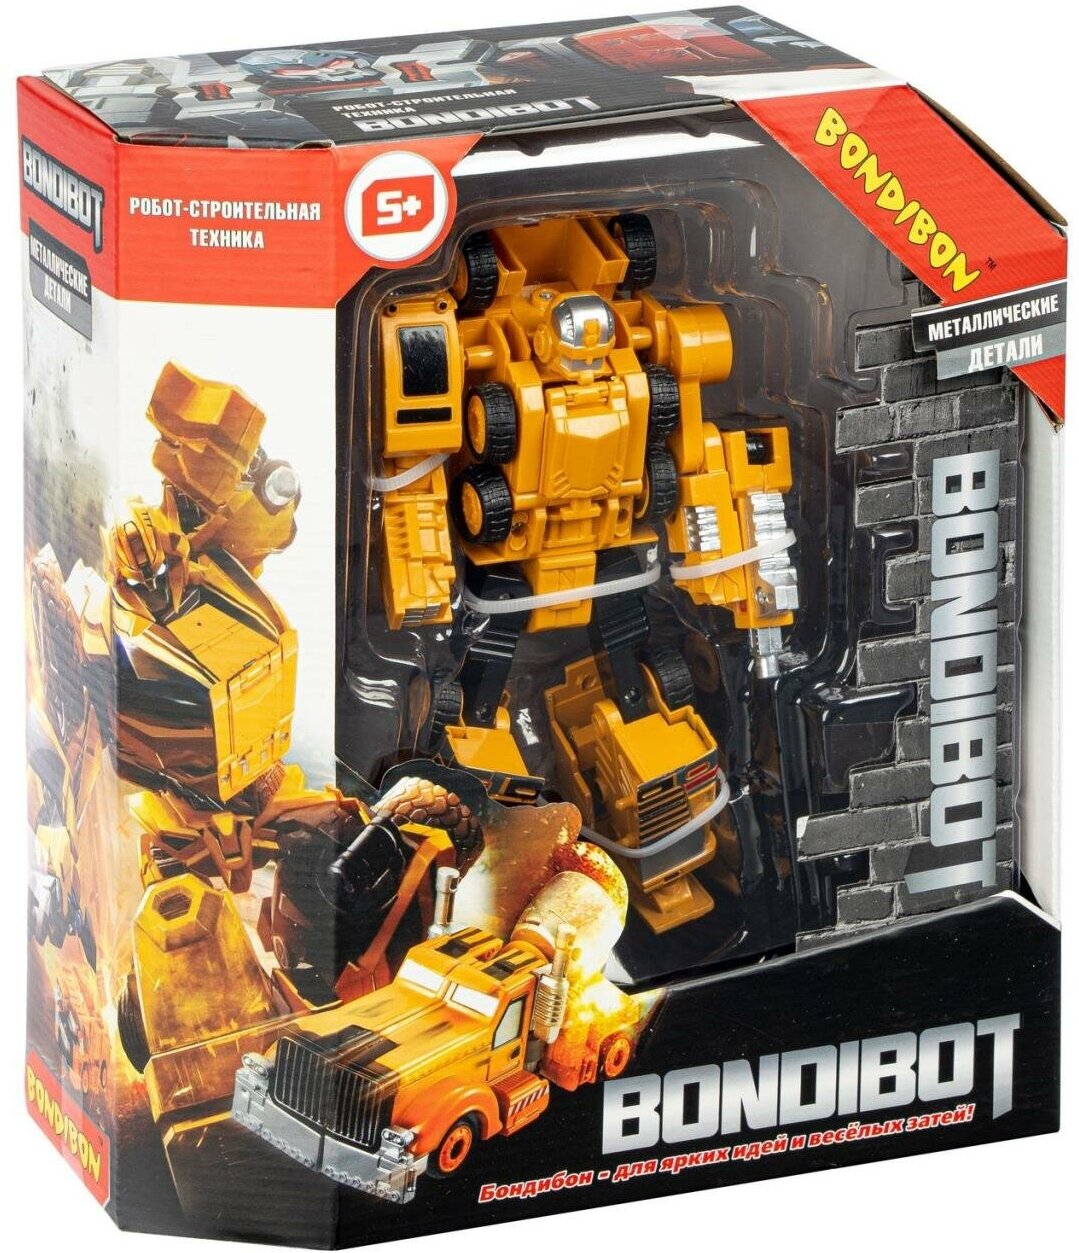 Трансформер 2в1 BONDIBOT робот-строит. техника (автомобильный кран), метал. детали, Bondibon BOX 21,